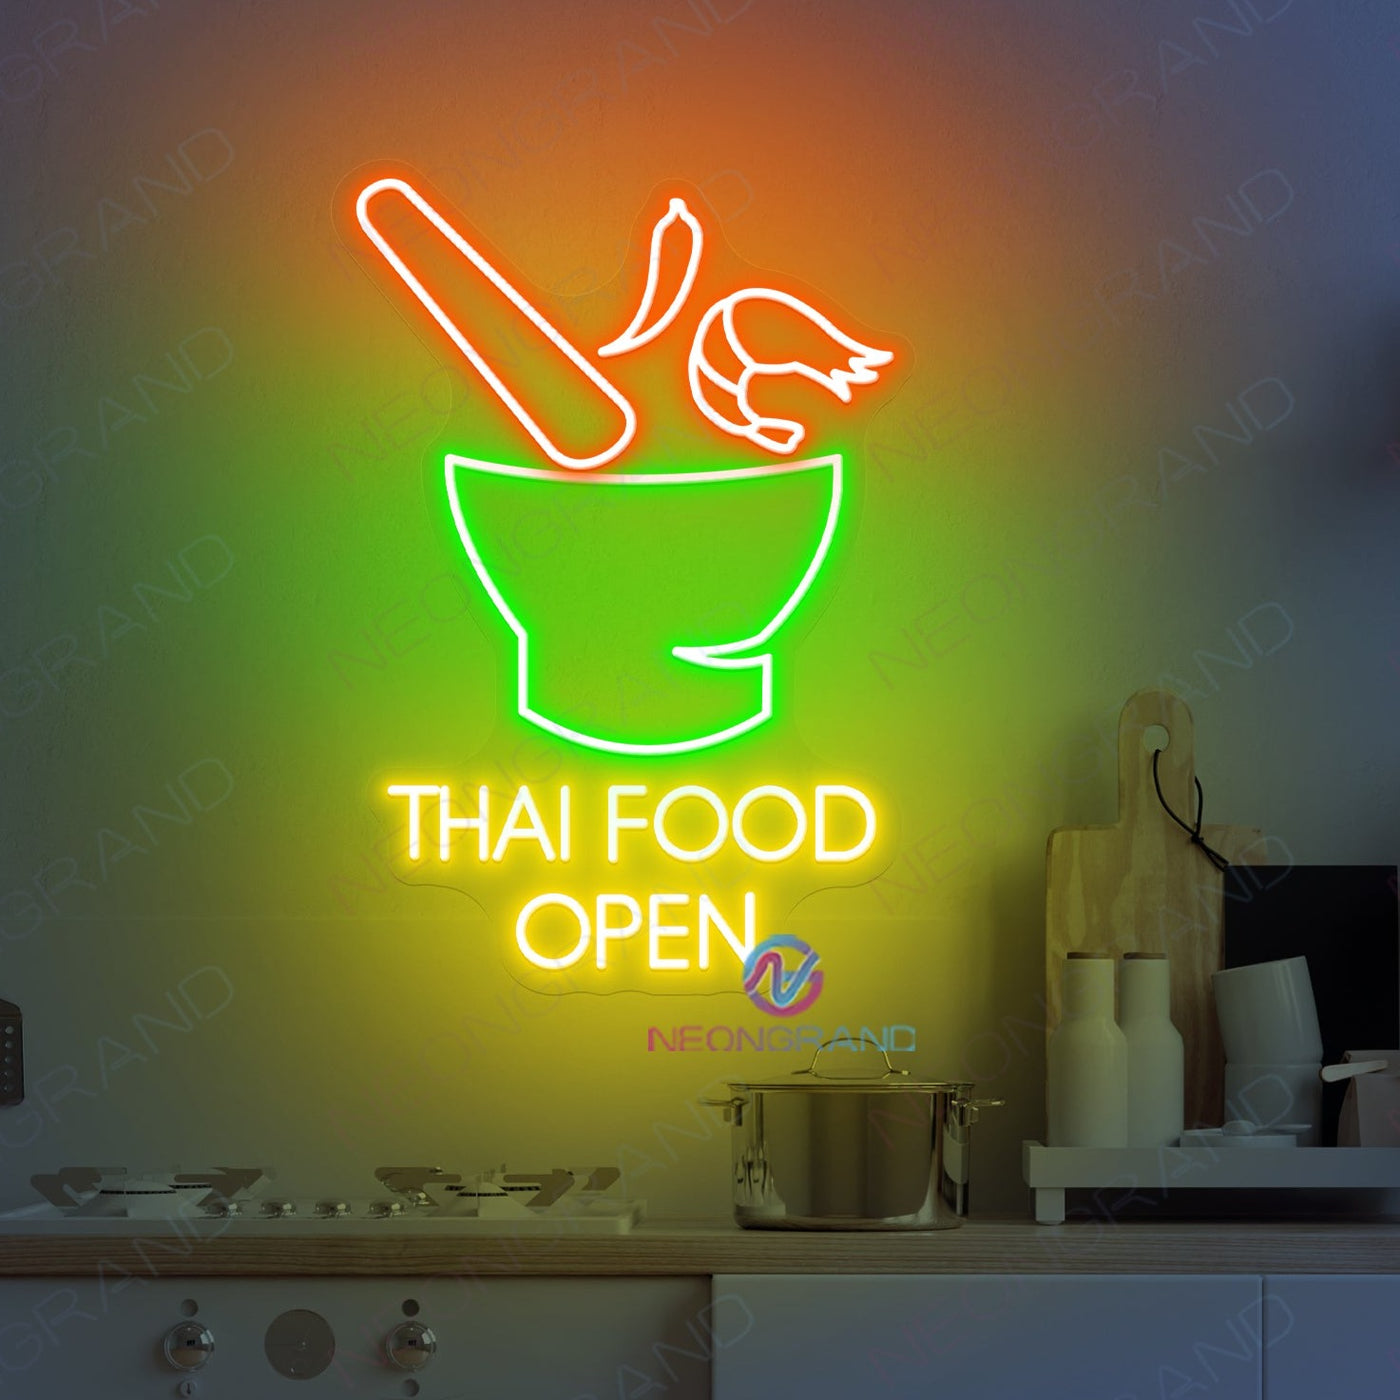 Thai Food Open Neon Sign Restaurant Led Light